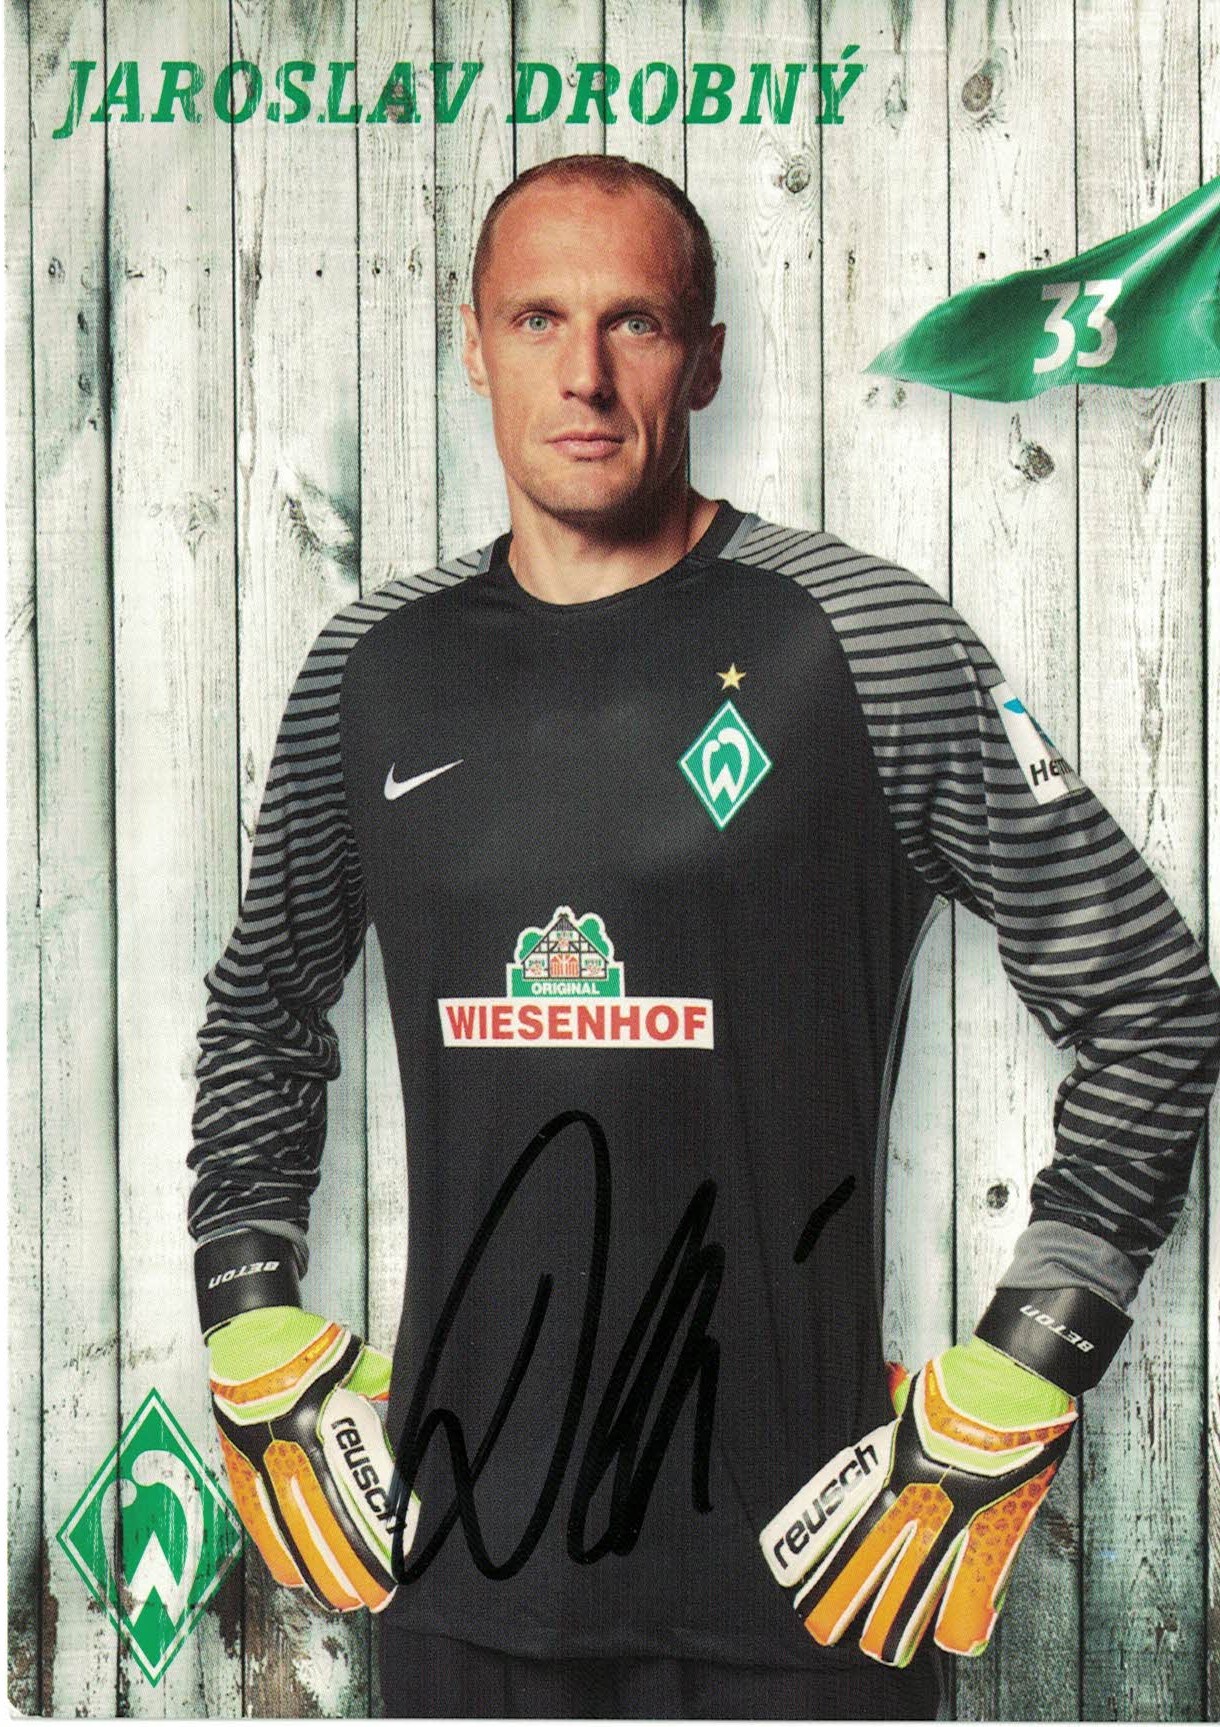 Jaroslav Drobny Werder Bremen 2016/17 Podpisova karta autogram